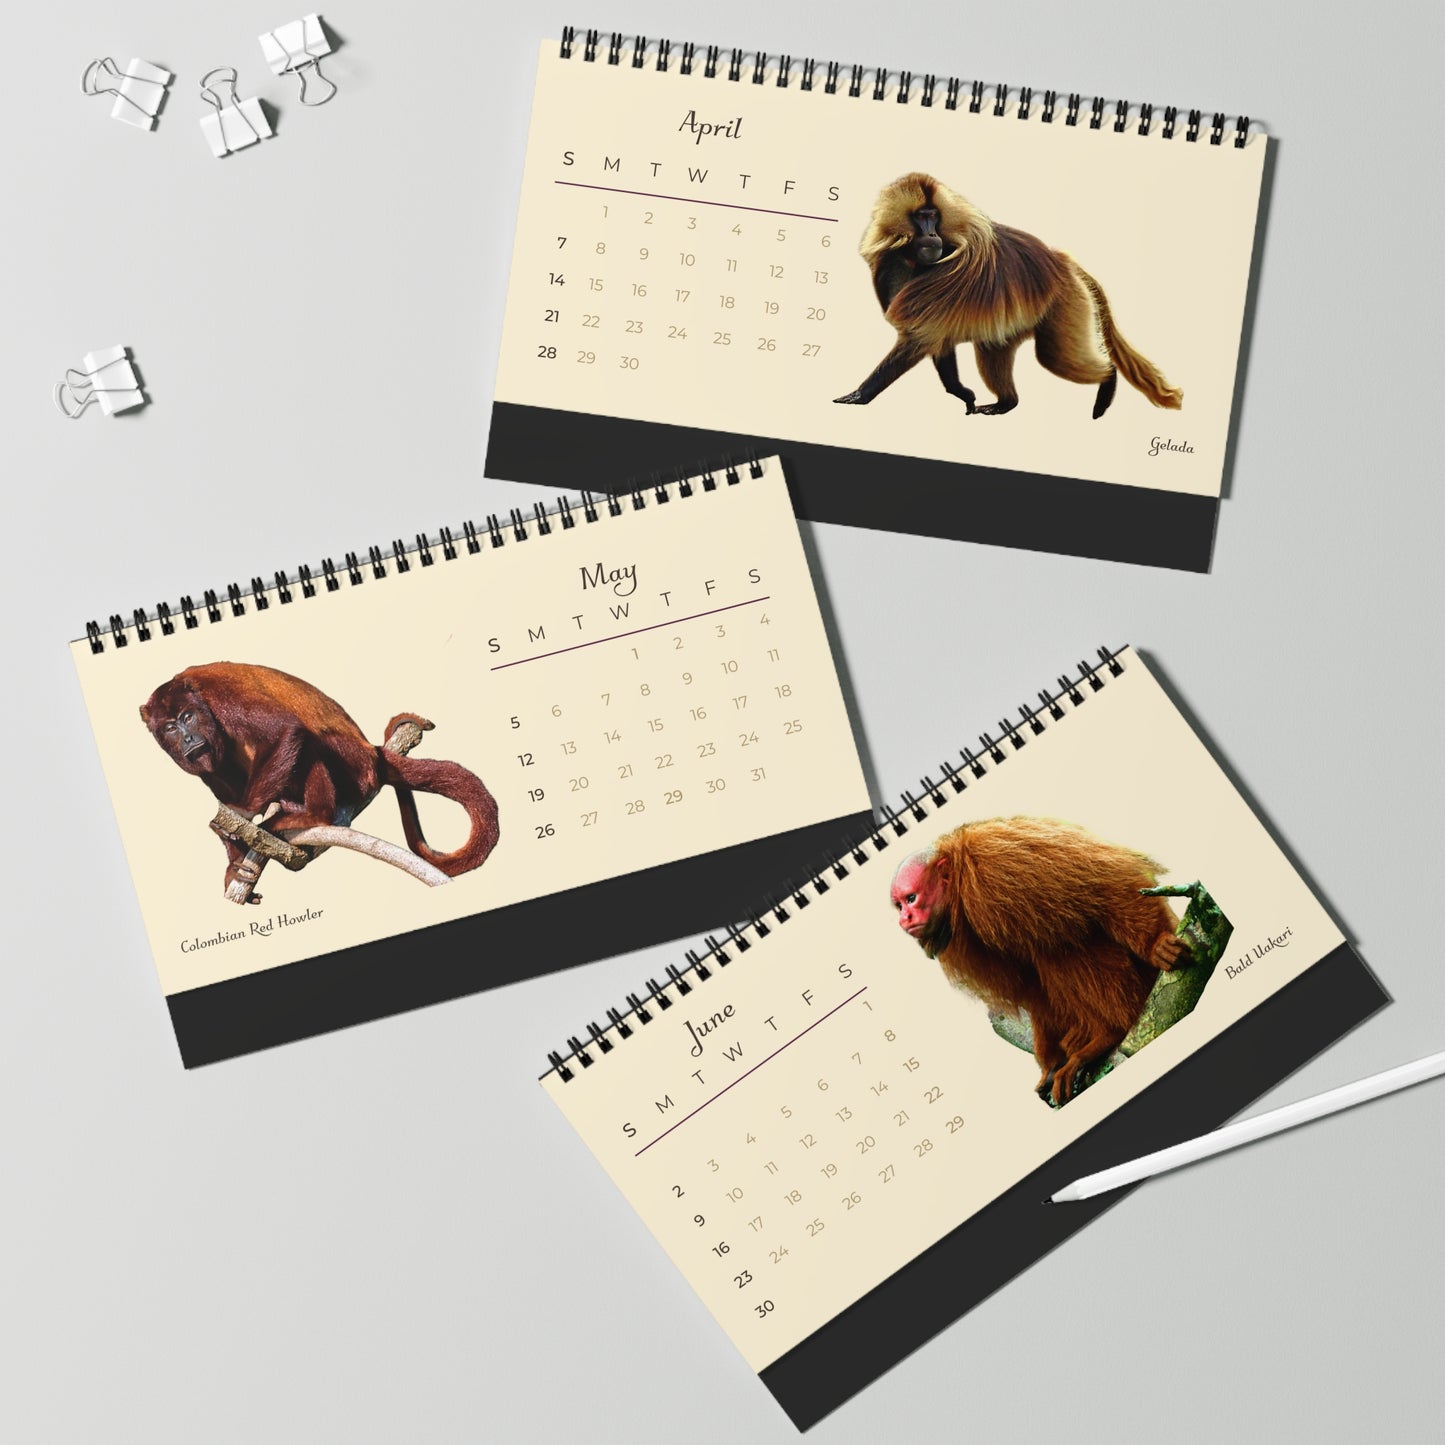 Mightiest Monkeys of 2024 Desk Calendar